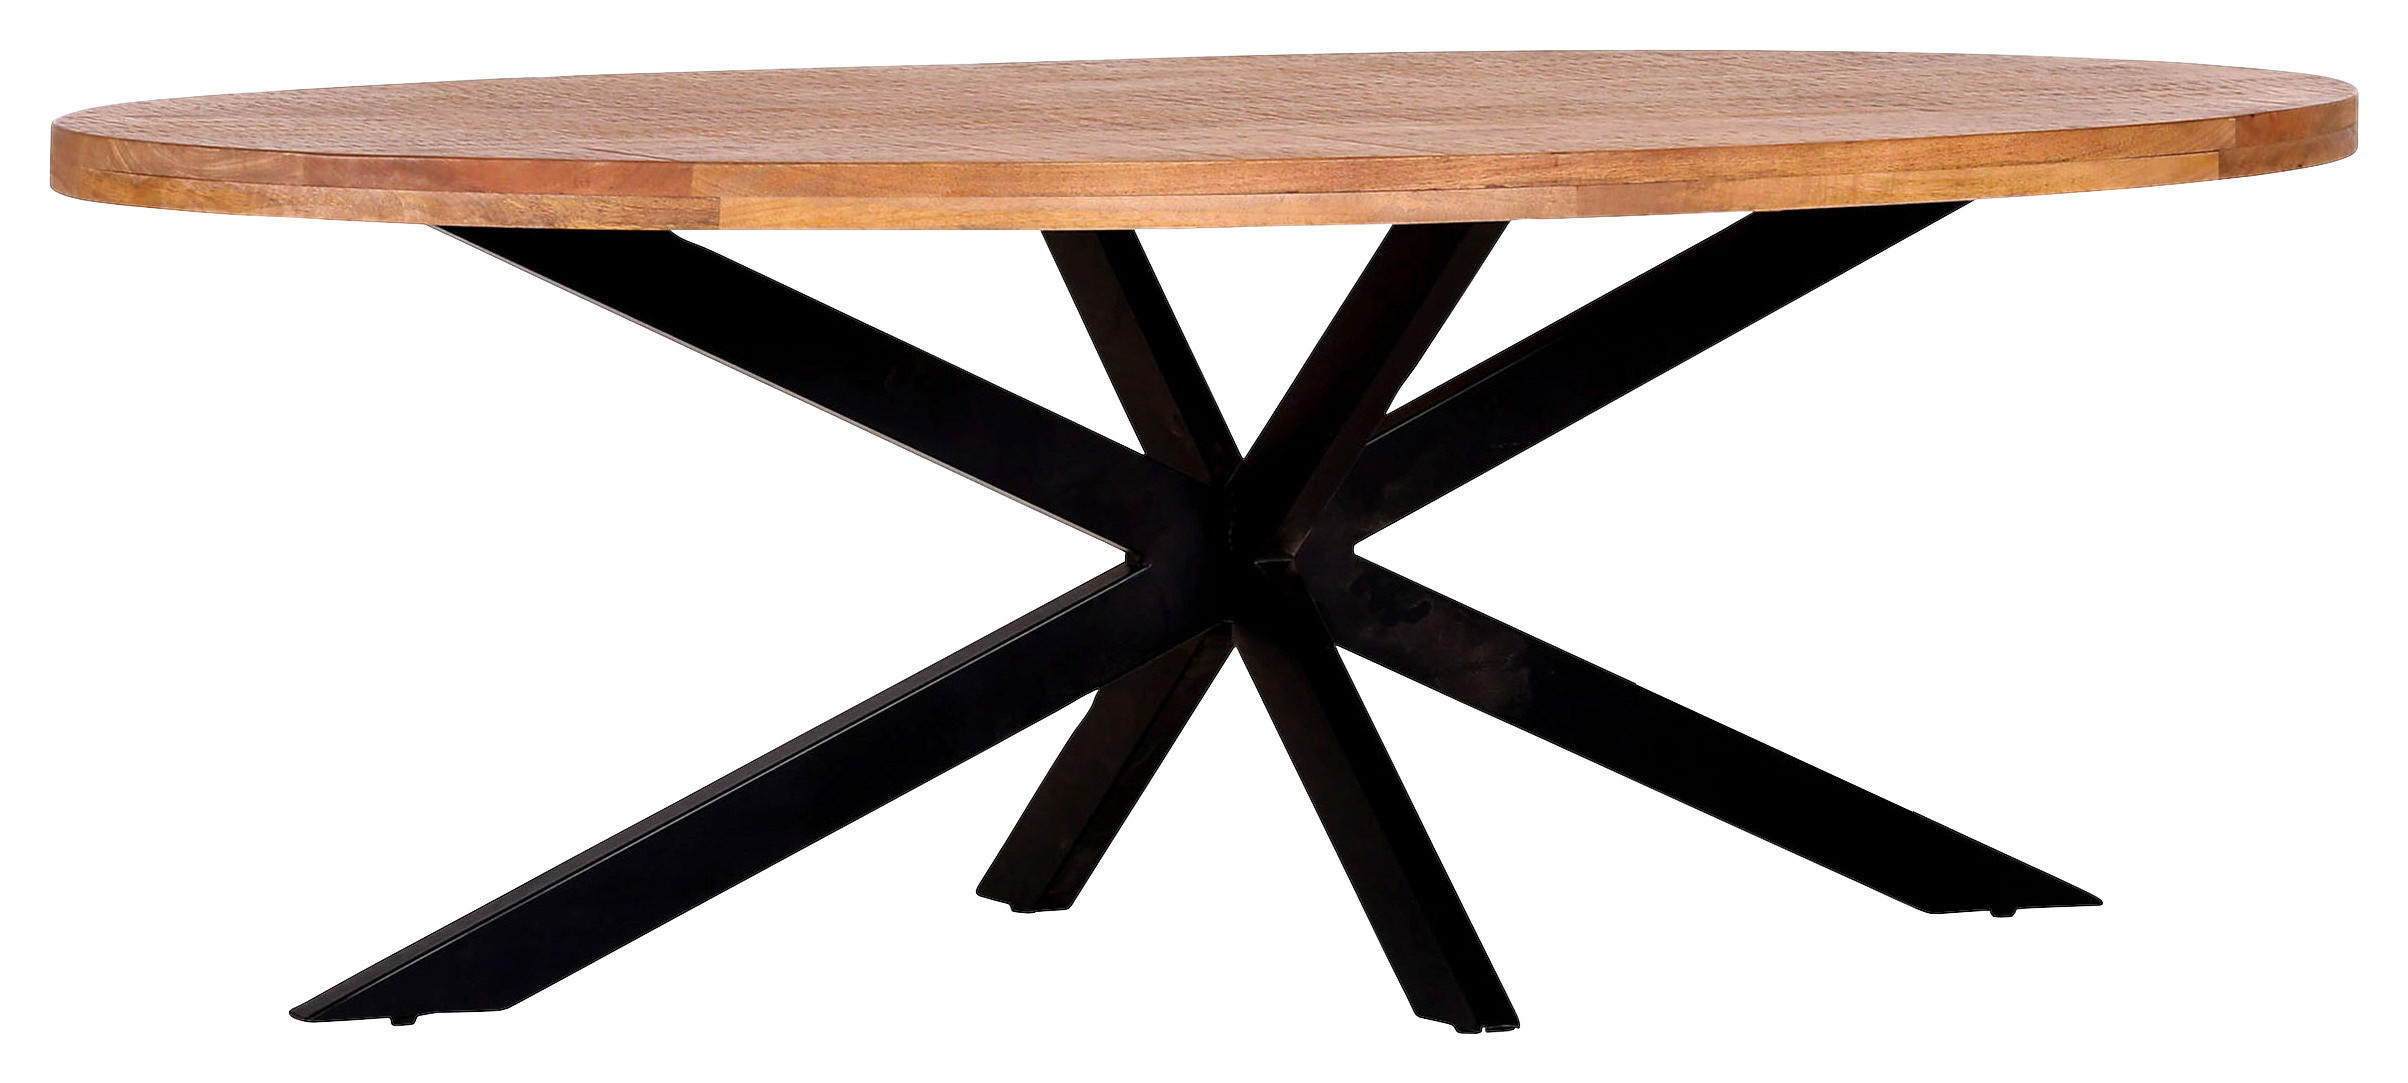 MASĂ in lemn 220/100/77 cm   - culoare natur/negru, Modern, lemn/metal (220/100/77cm) - Voleo